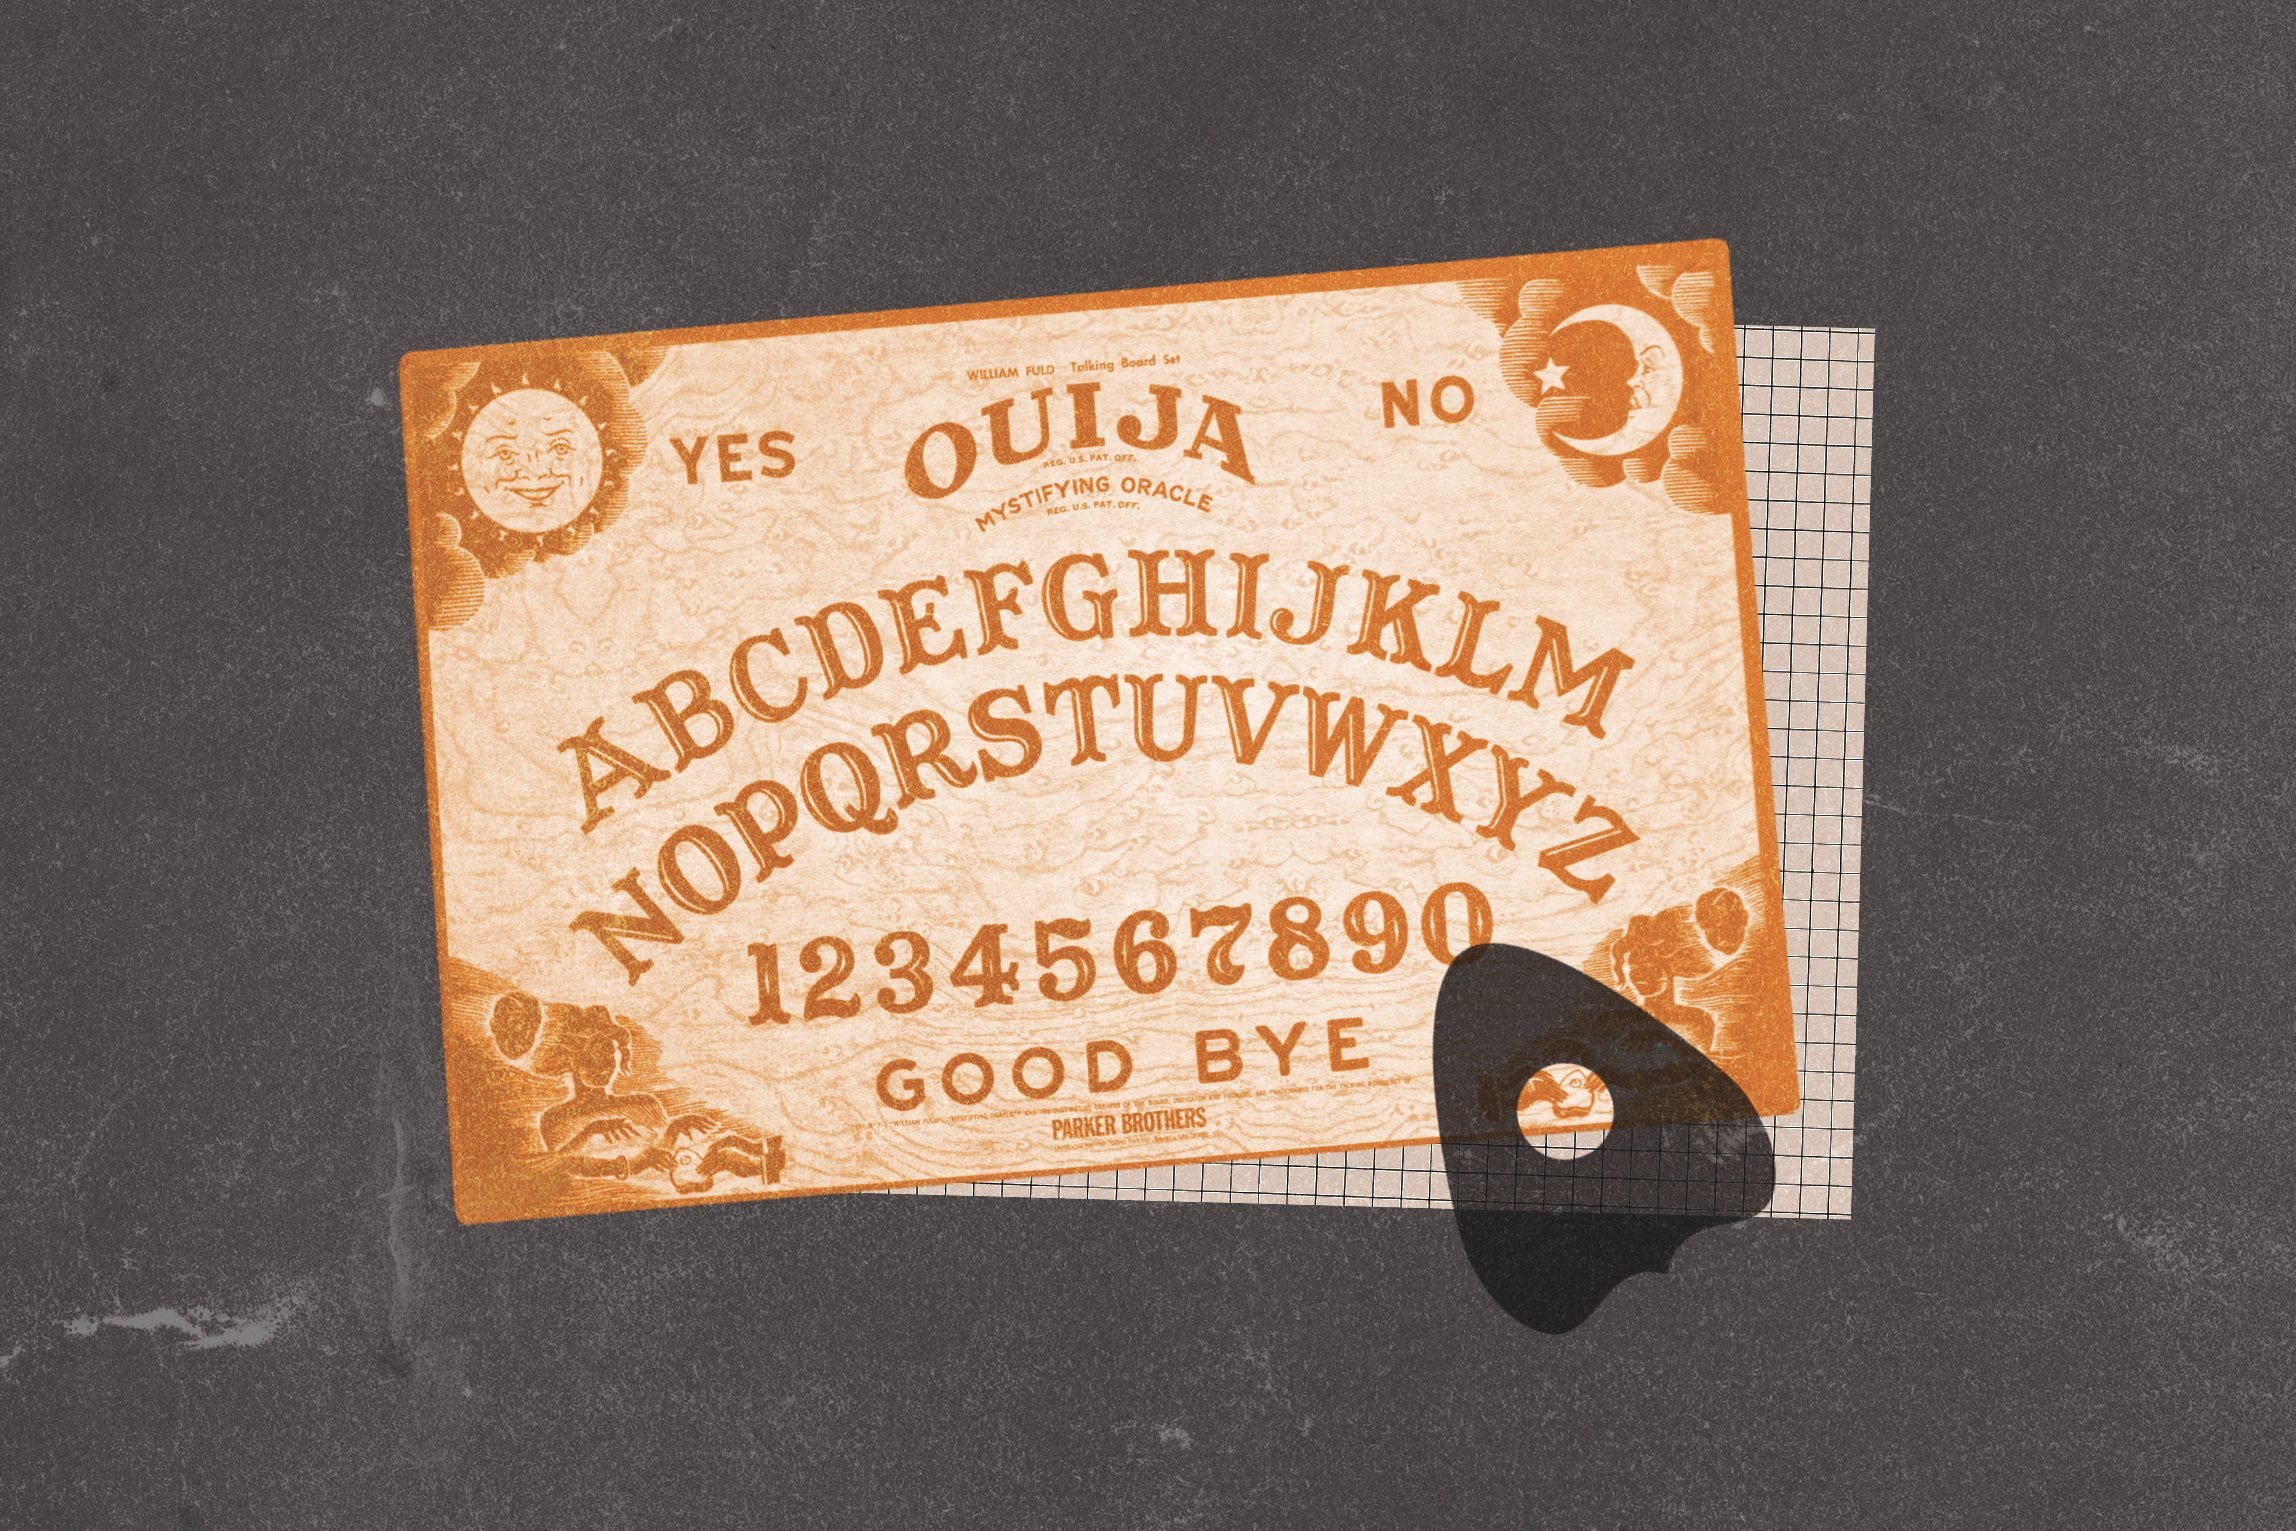 13 Spooky Ouija Board Stories 2022 | True Tales That Will Freak You Out